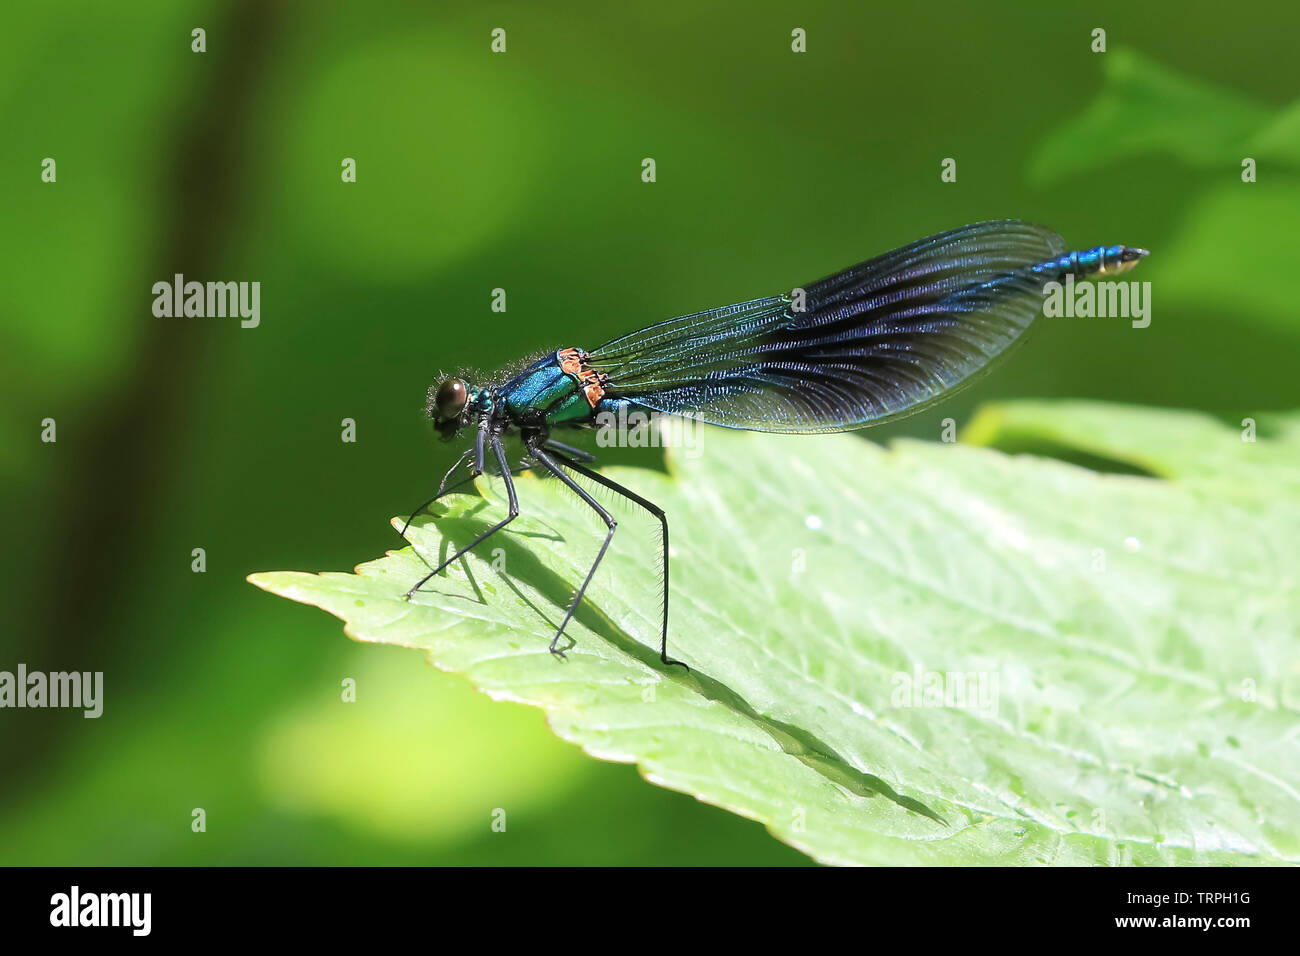 Détaillé, macro, side view close up of a wild UK libellule insecte (Zygoptera) isolés à l'extérieur au début de l'été soleil perché sur single, feuille verte. Banque D'Images